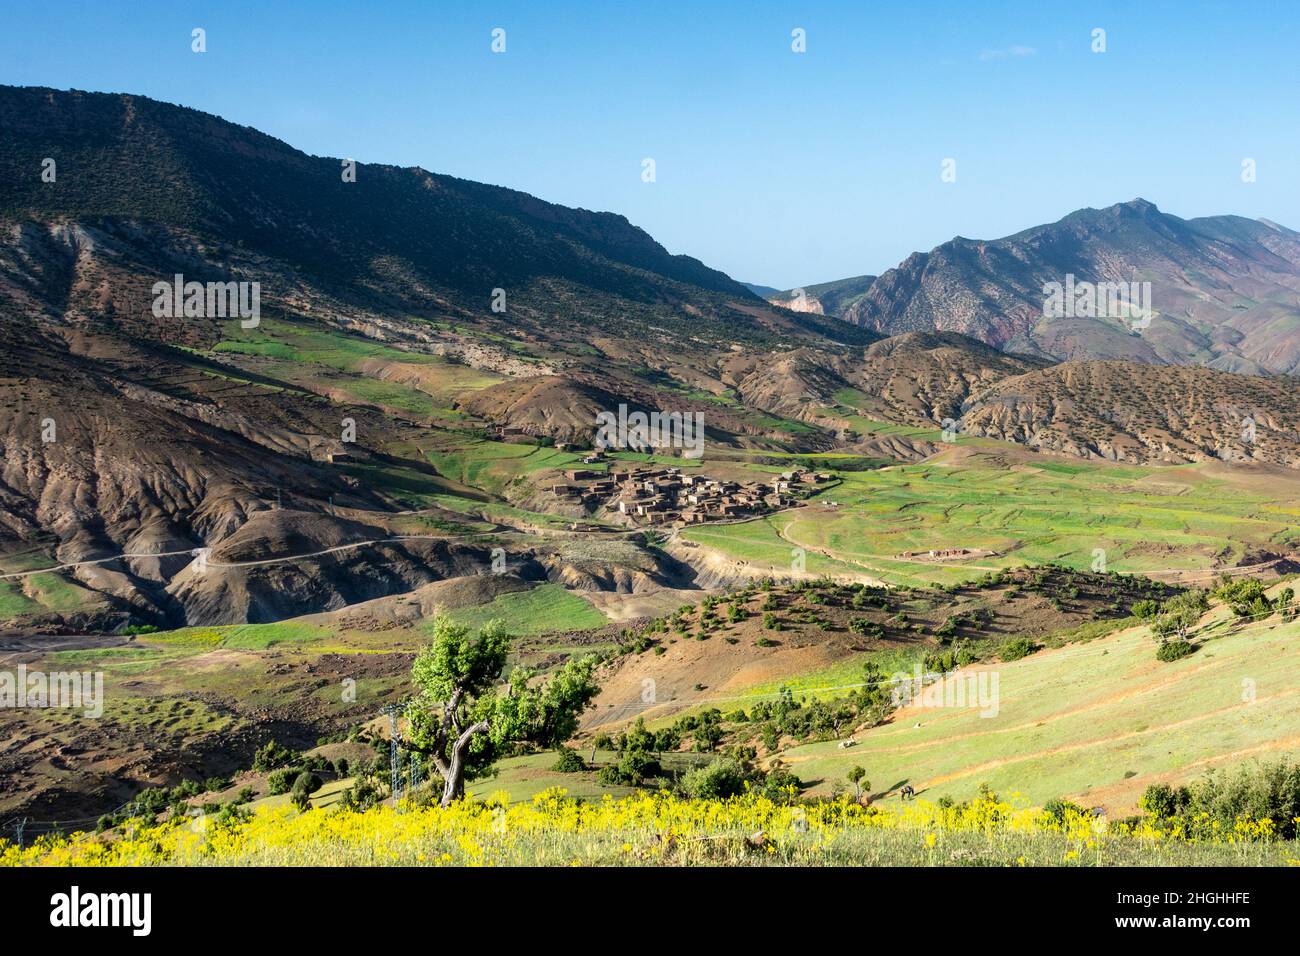 Le montagne dell'Atlante in Marocco. Villaggio berbero in fondo ad una valle, circondato da raccolti terrazzati Foto Stock